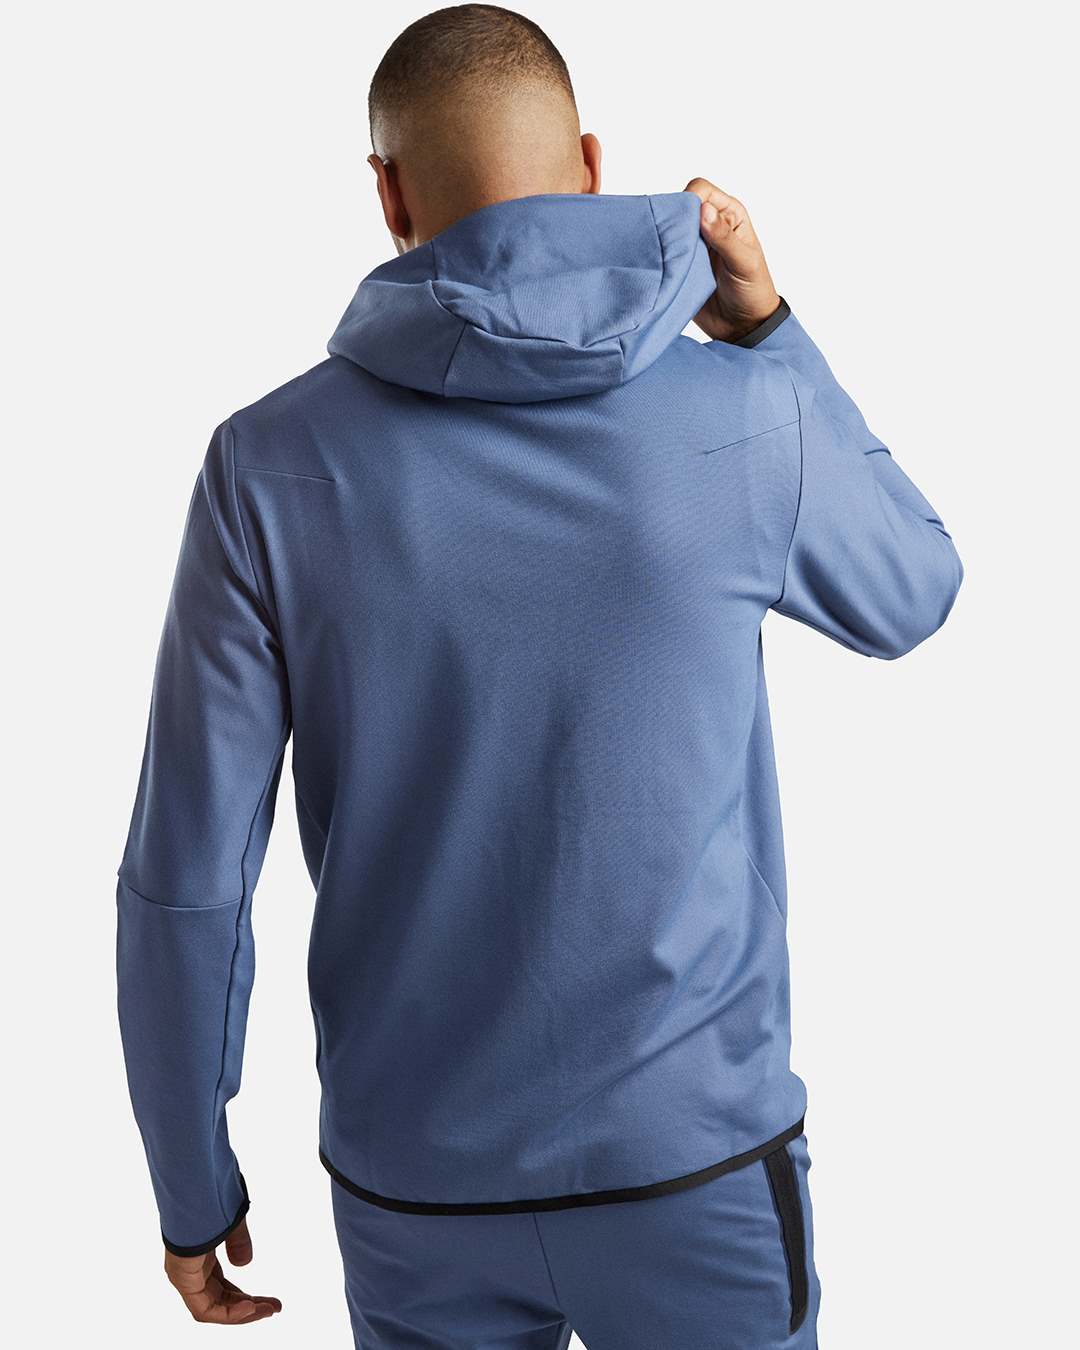 Veste à capuche Nike Tech Fleece Lightweight - Bleu/Noir